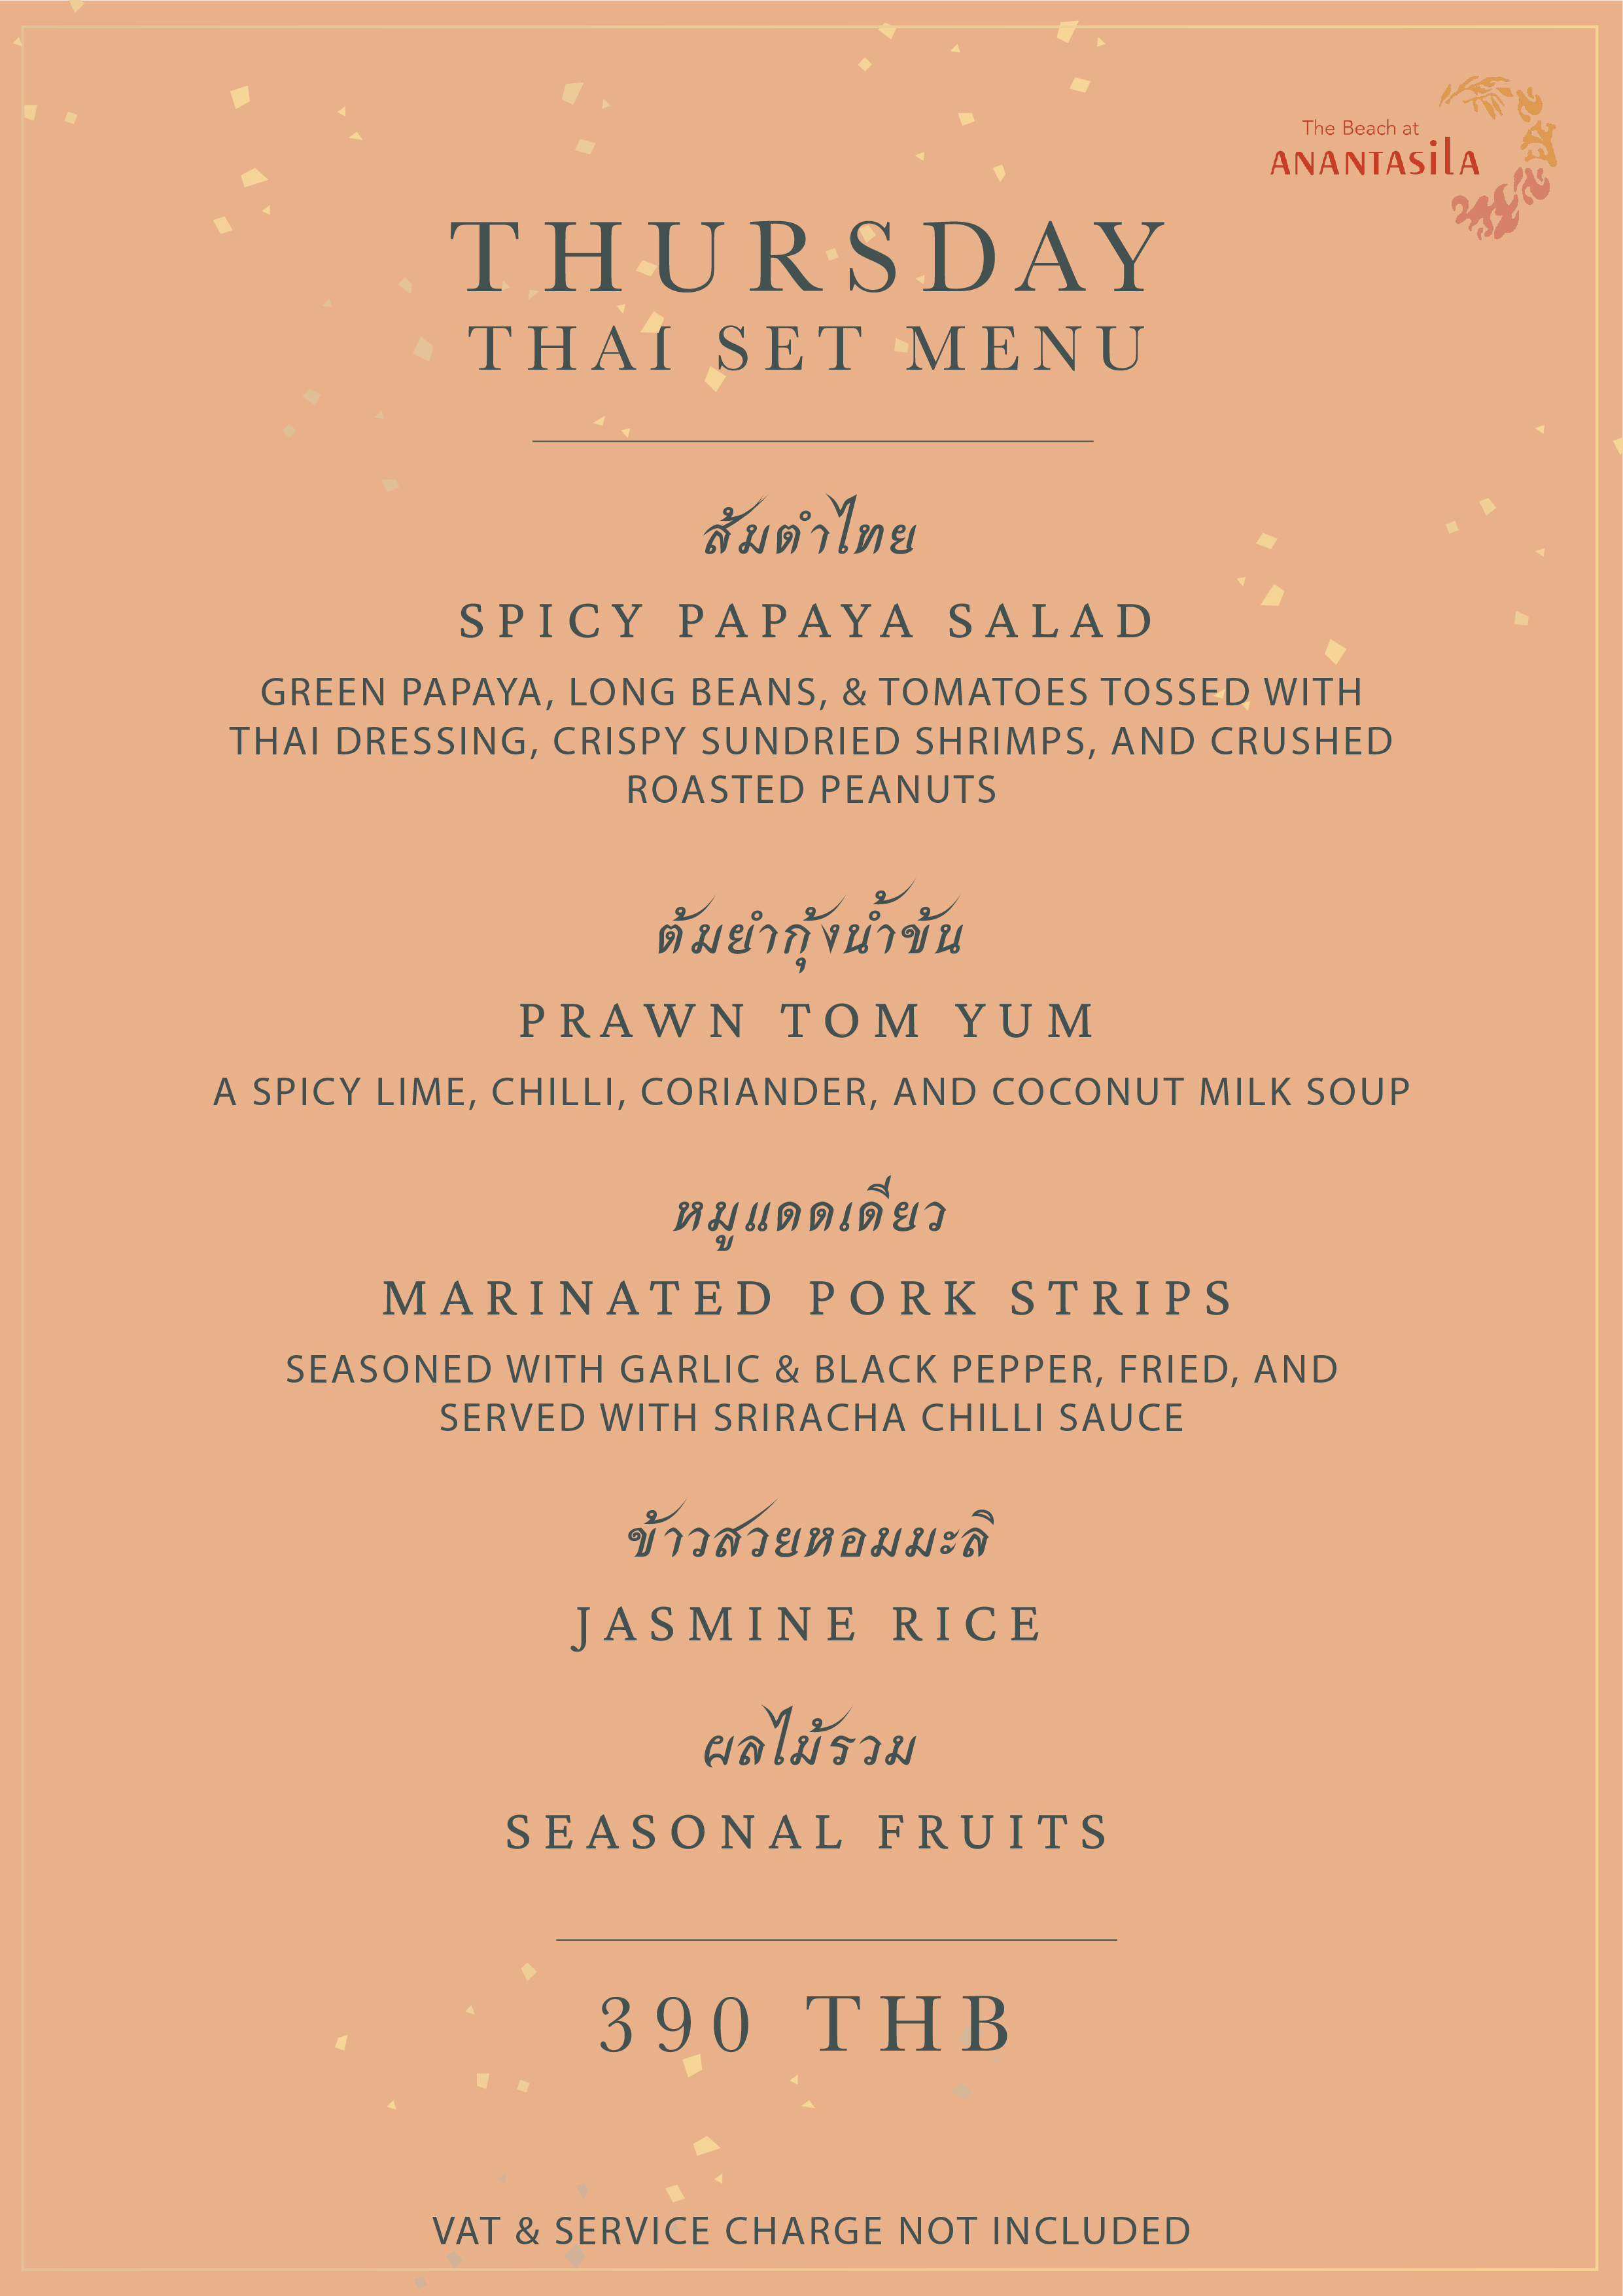 Thai set menu Thursday